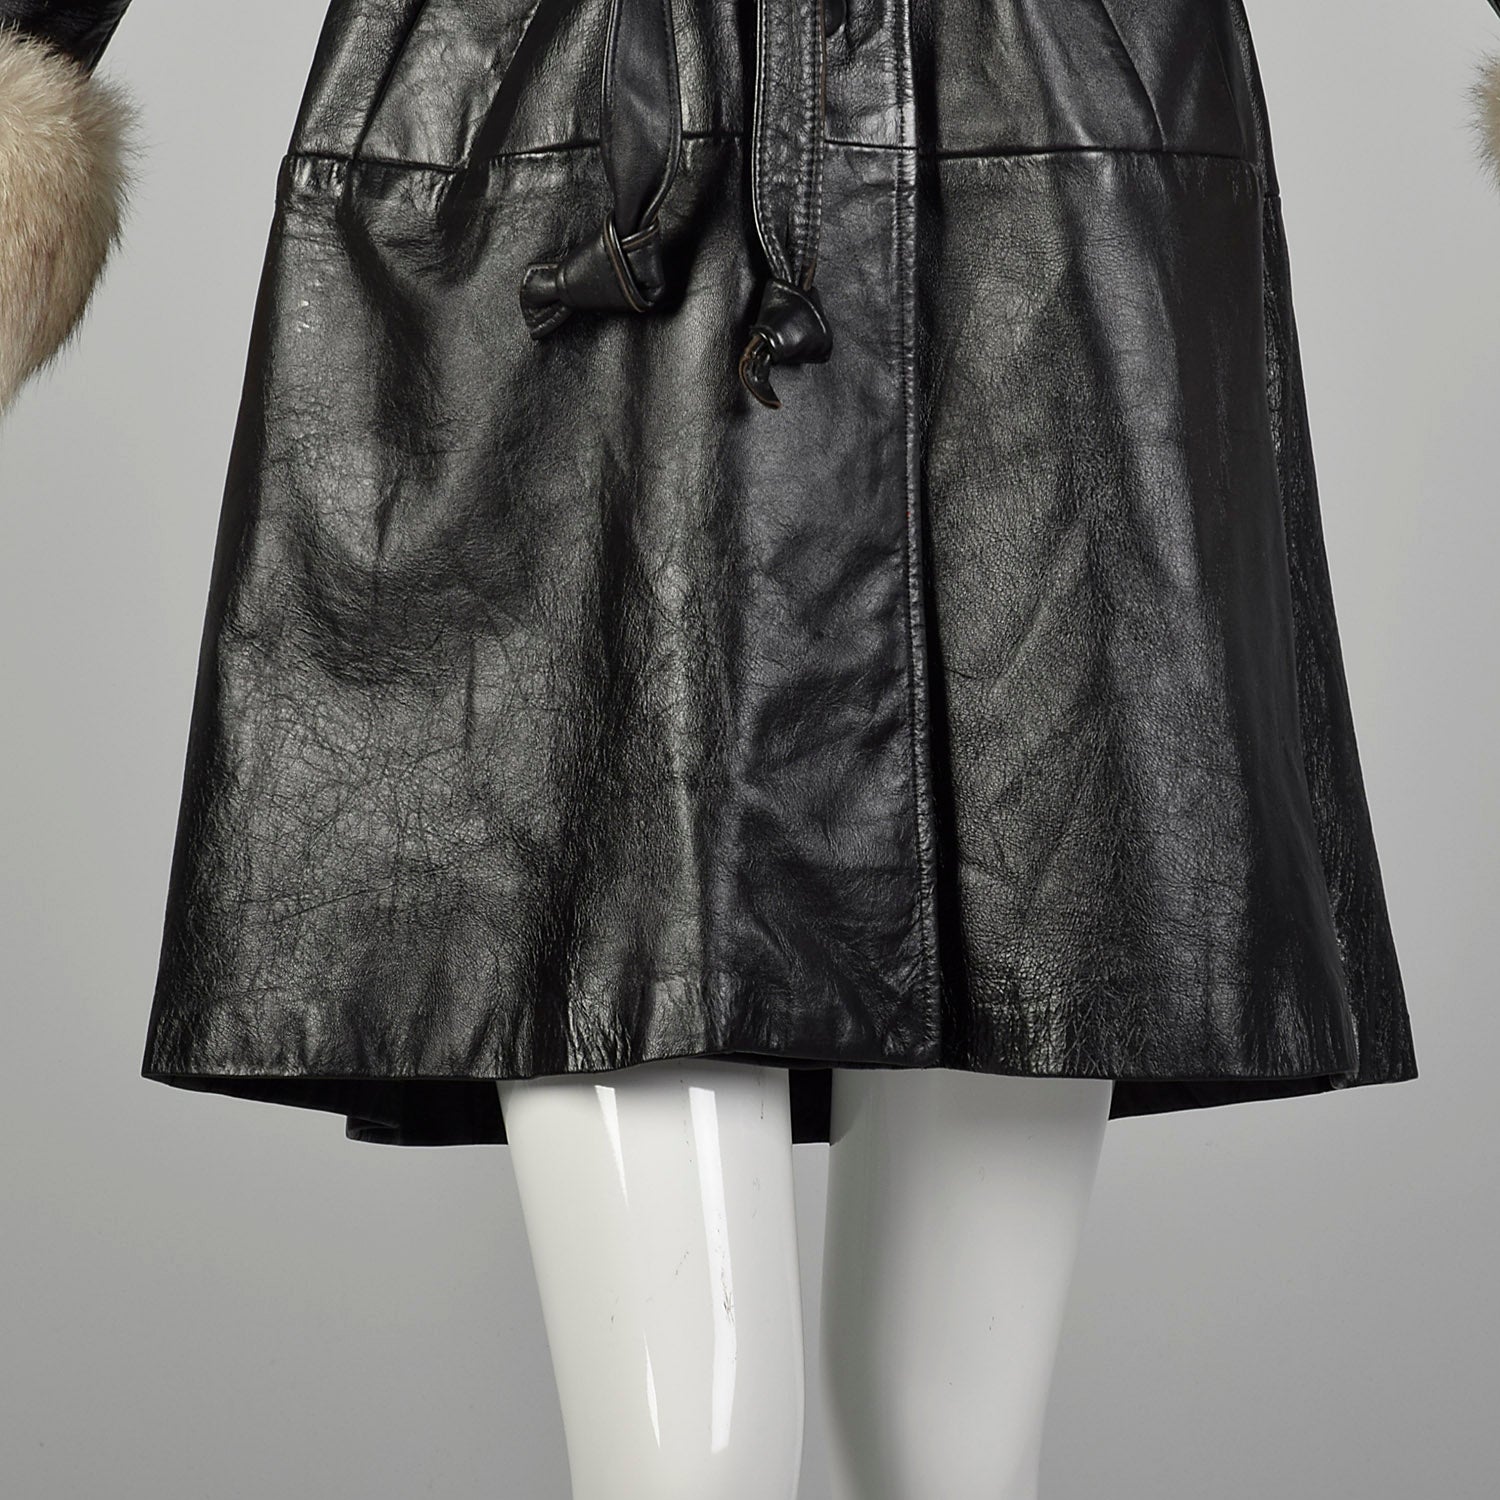 Medium 1960s Black Leather Coat with Fox Fur Trim